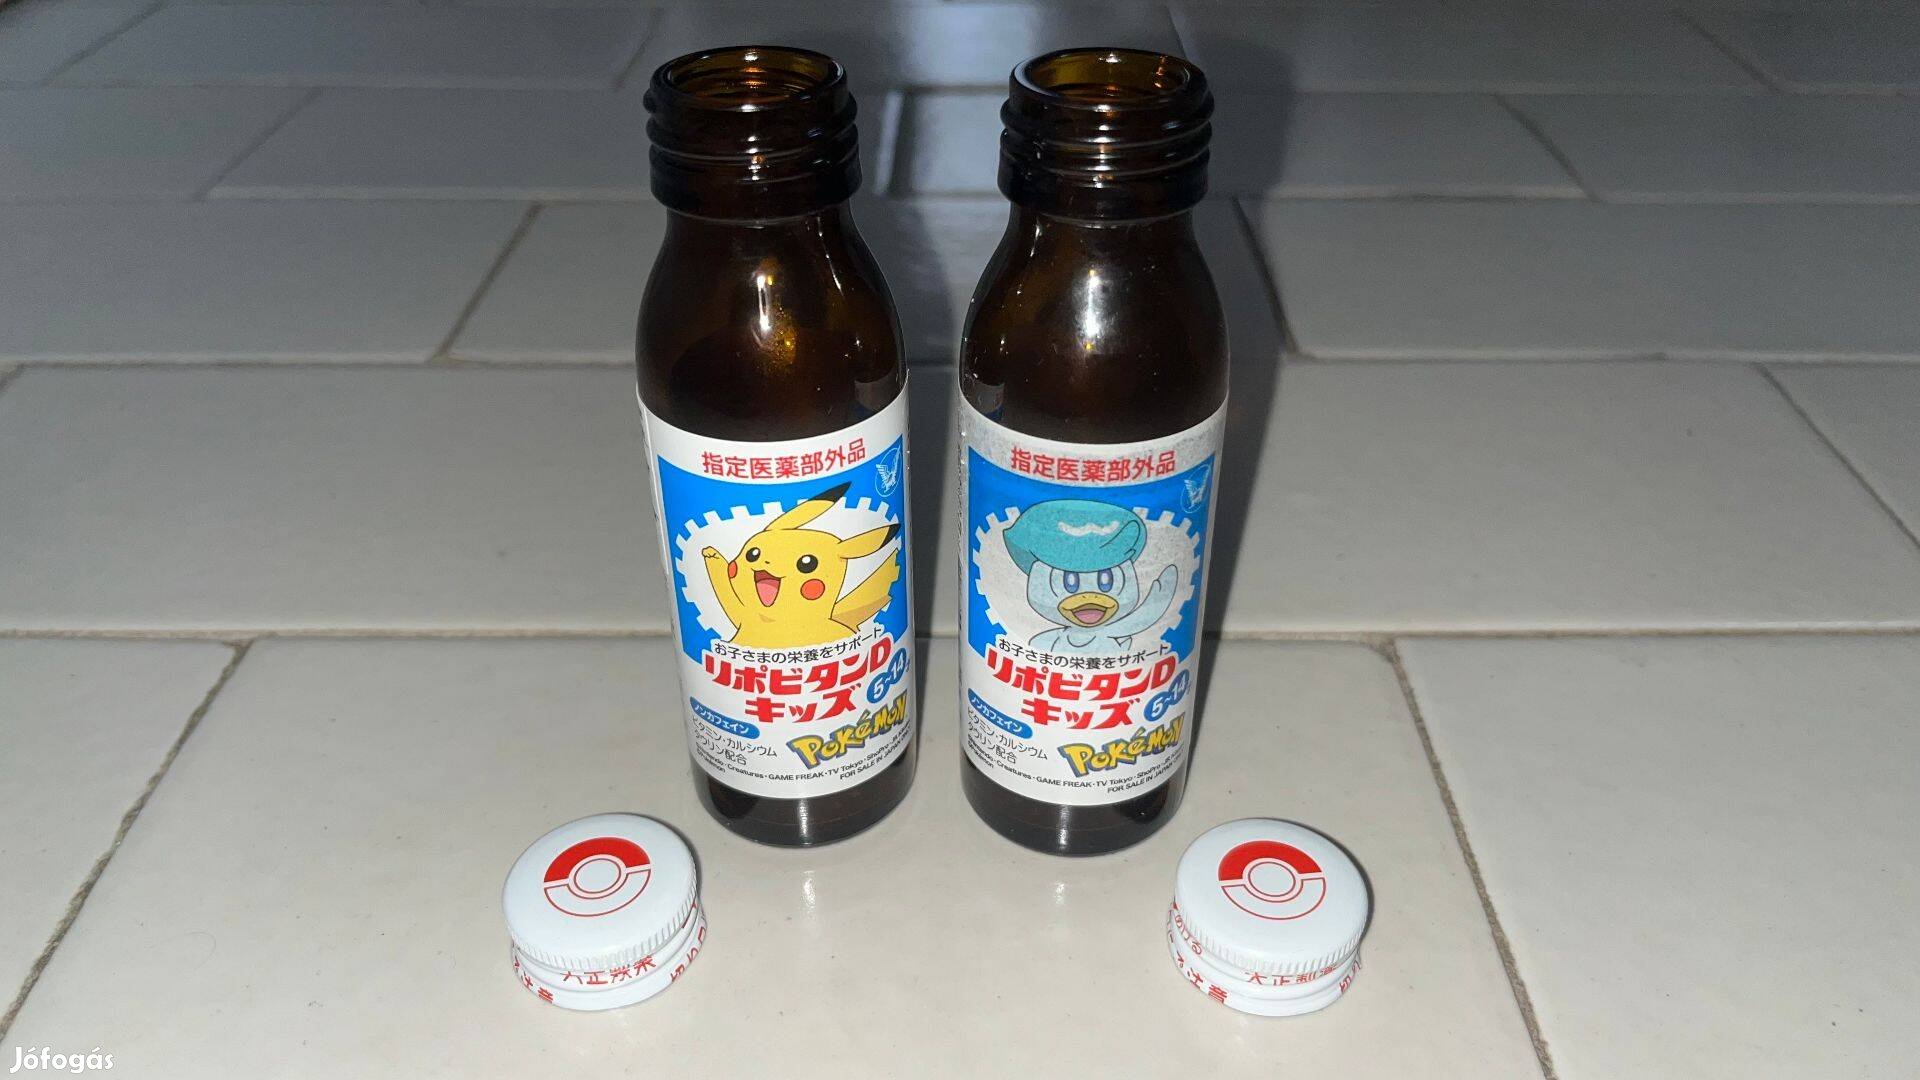 Pokémon üveges energiaital 50 ml (üres) japán termék